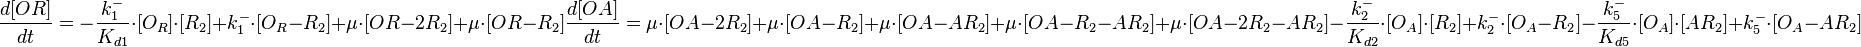  \frac{d[OR]}{dt}= -\frac{k^{-}_{1}}{K_{d1}}\cdot [O_{R}]\cdot [R_{2}] + k^{-}_{1}\cdot [O_{R}-R_{2}]+\mu\cdot[OR-2R_2] +\mu\cdot[OR-R_2]

       \frac{d[OA]}{dt}=\mu\cdot[OA-2R_2] +\mu\cdot[OA-R_2]+\mu\cdot[OA-AR_2]+\mu\cdot[OA-R_2-AR_2]+\mu\cdot[OA-2R_2-AR_2]-\frac{k^{-}_{2}}{K_{d2}}\cdot [O_{A}]\cdot [R_{2}] + k^{-}_{2}\cdot [O_{A}-R_{2}]-\frac{k^{-}_{5}}{K_{d5}}\cdot [O_{A}]\cdot [AR_{2}] + k^{-}_{5}\cdot [O_{A}-AR_{2}]
